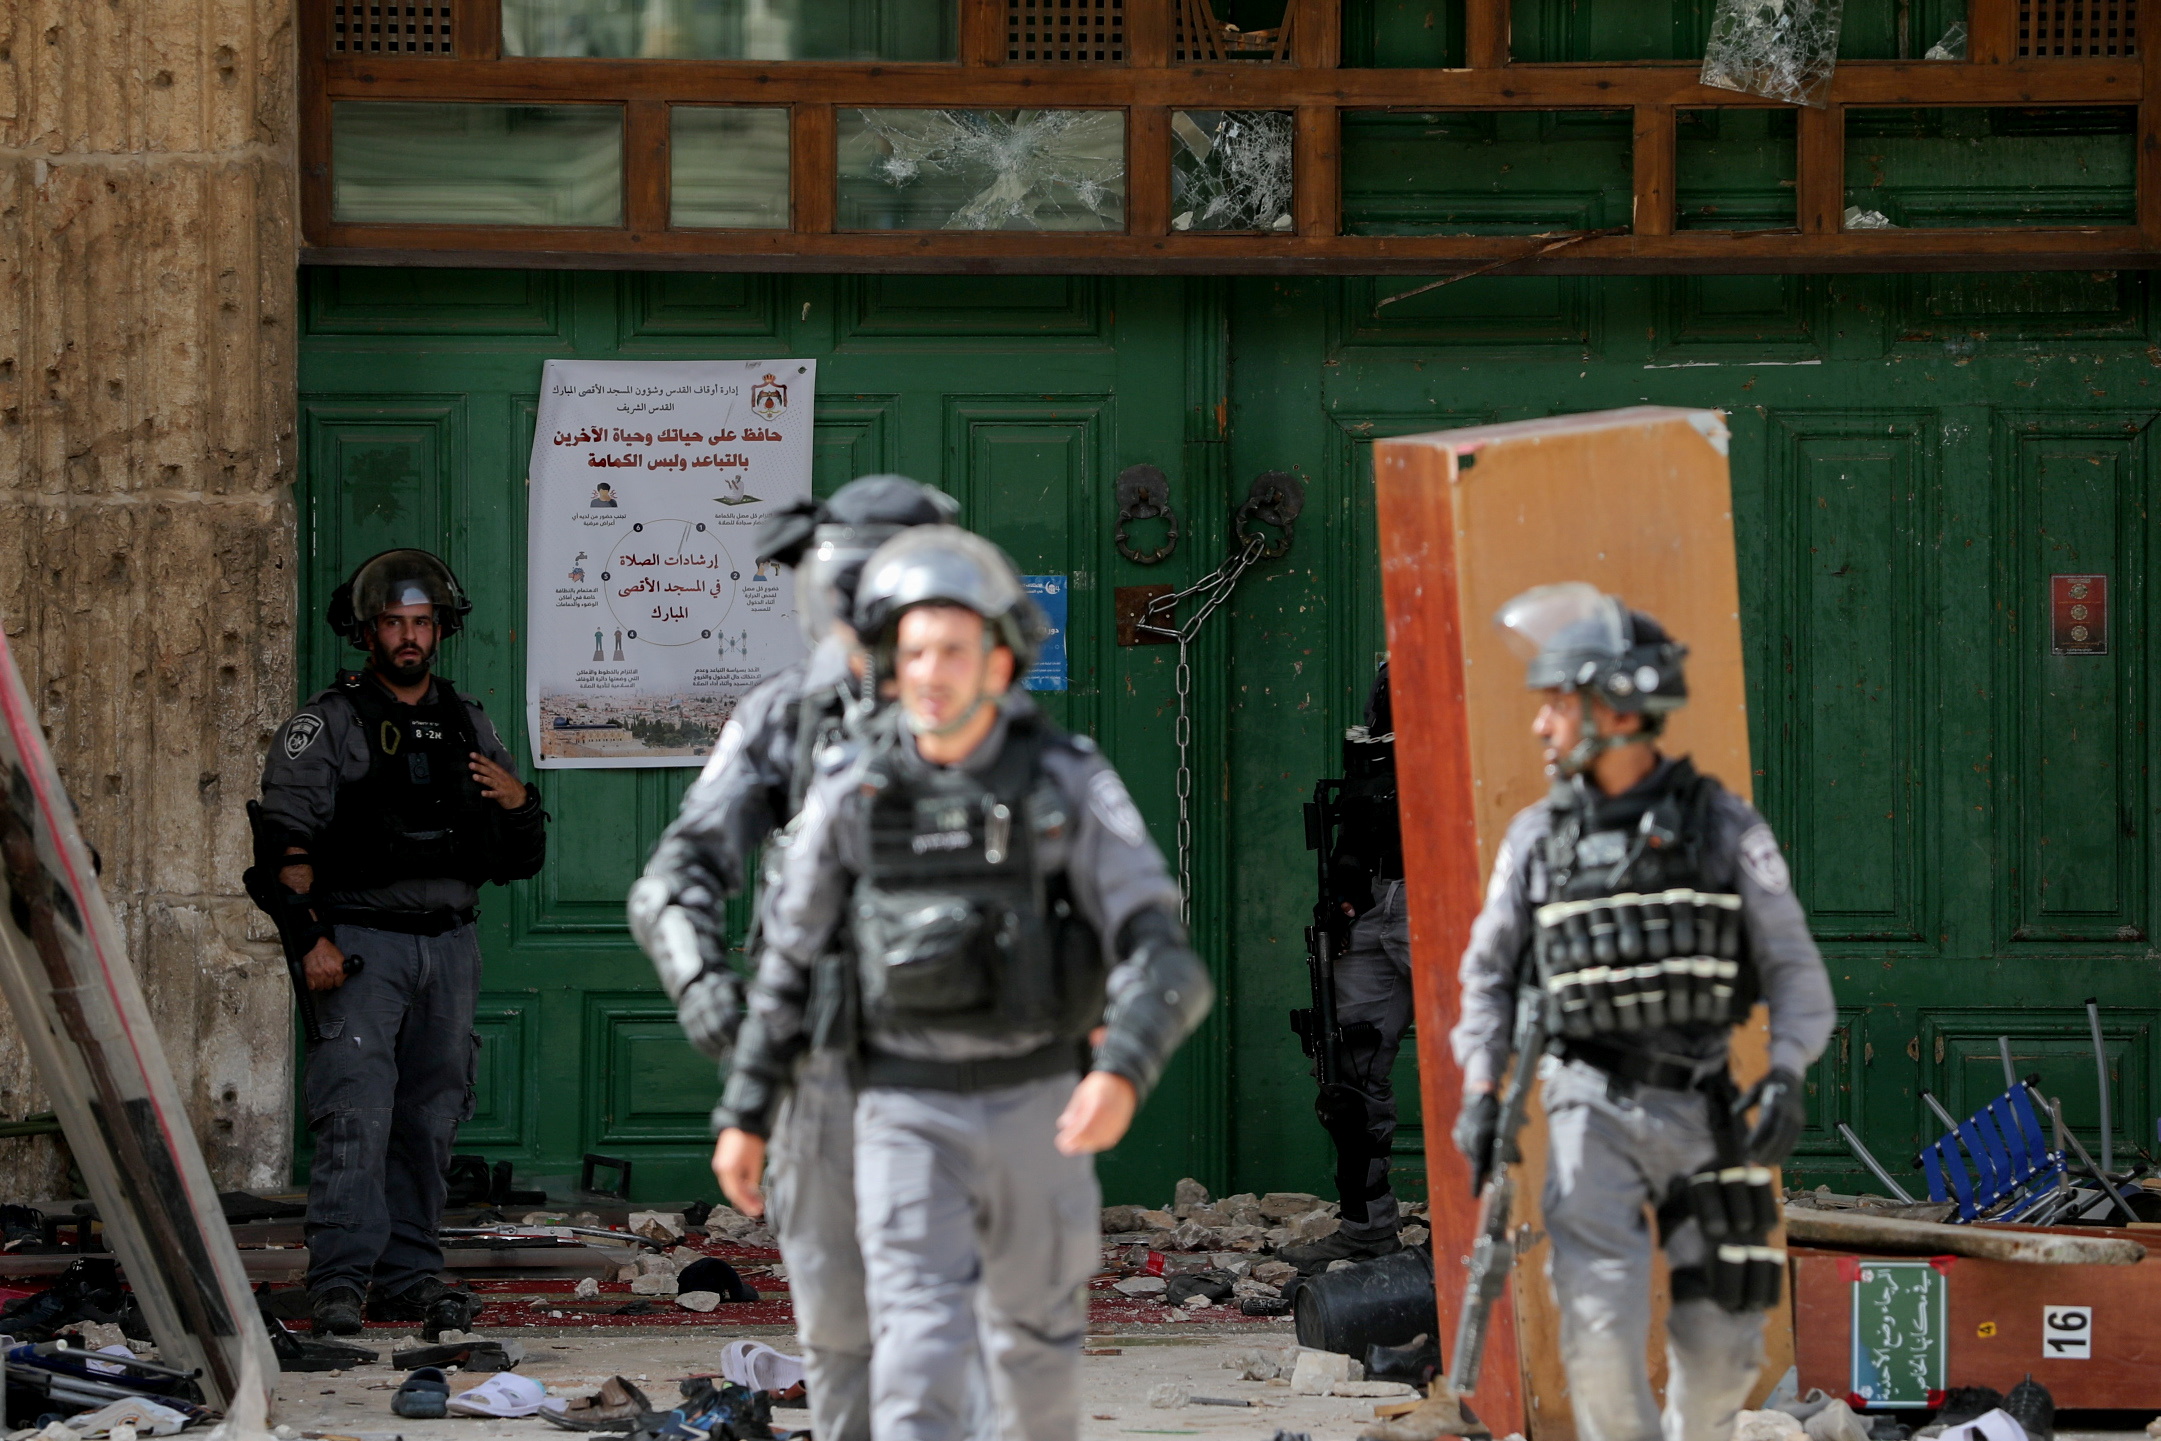 شرطة الاحتلال الإسرائيلي في باحة المسجد الأقصى بعد اقتحامهم واعتدائهم على المعتكفين والمصلين، 10 أيار/مايو 2021. (رويترز)